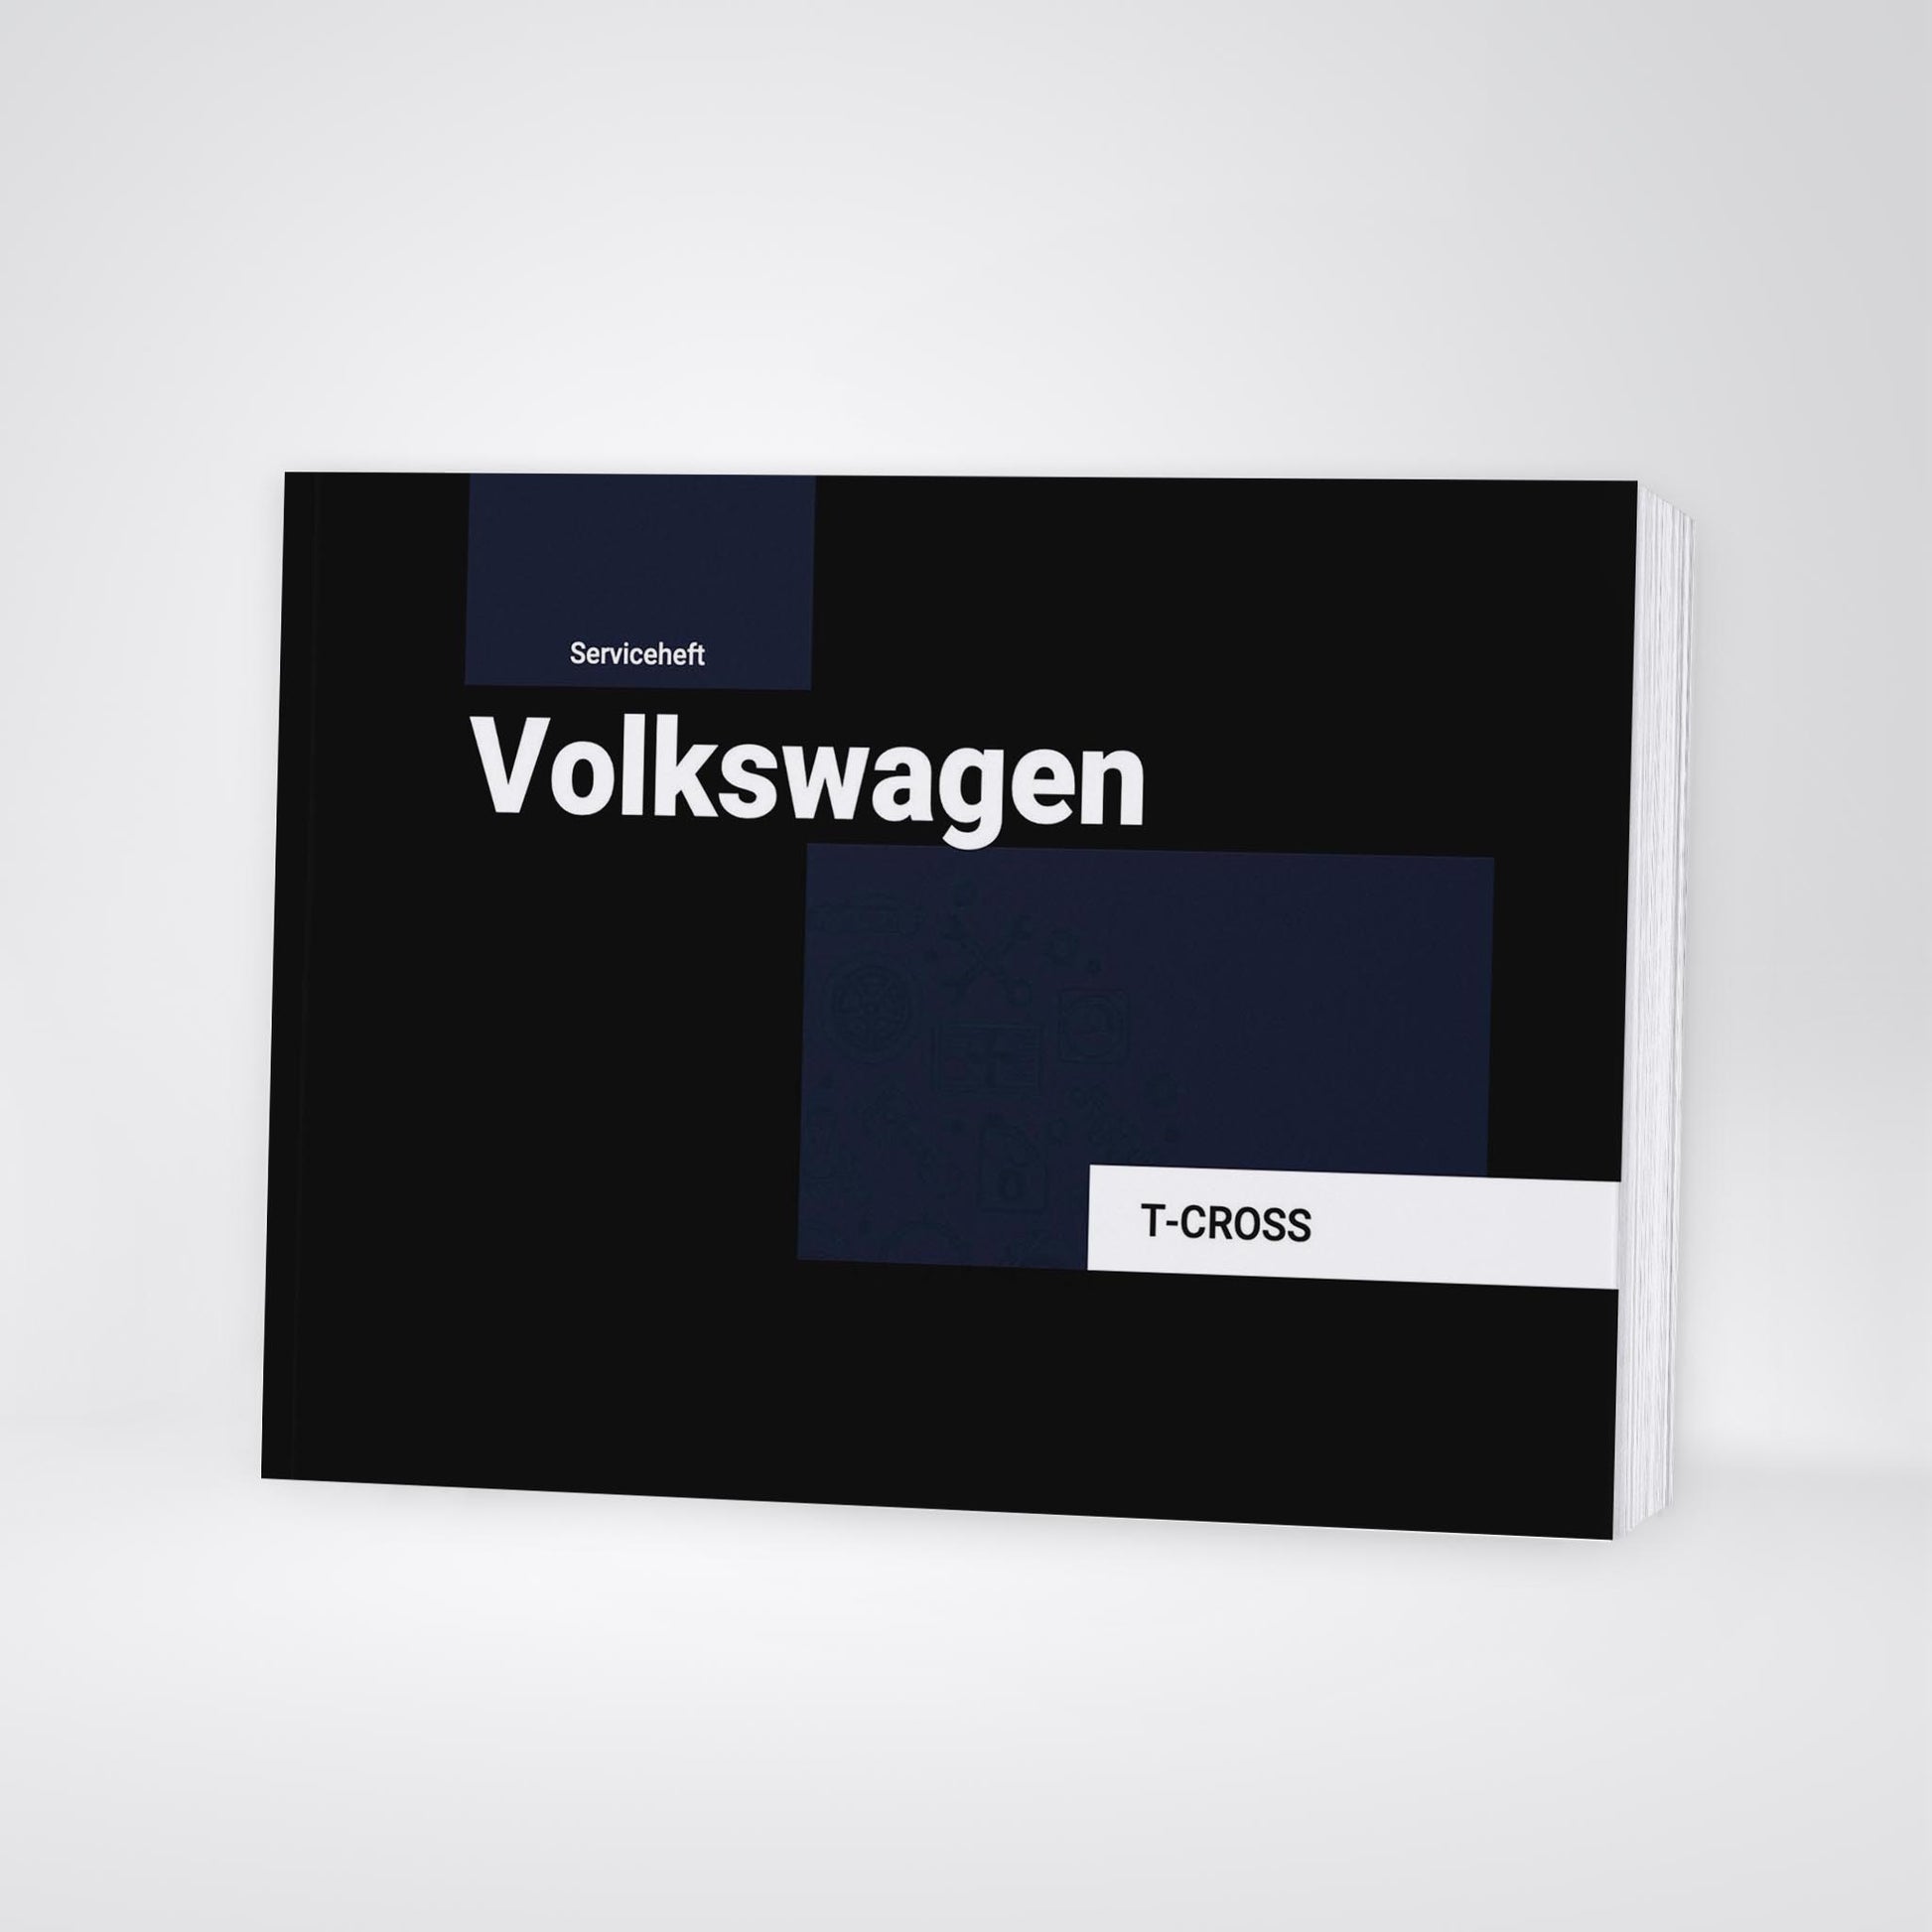 Stream 20+ Serviceheft VW geeignet: Scheckheft für alle VW Modelle